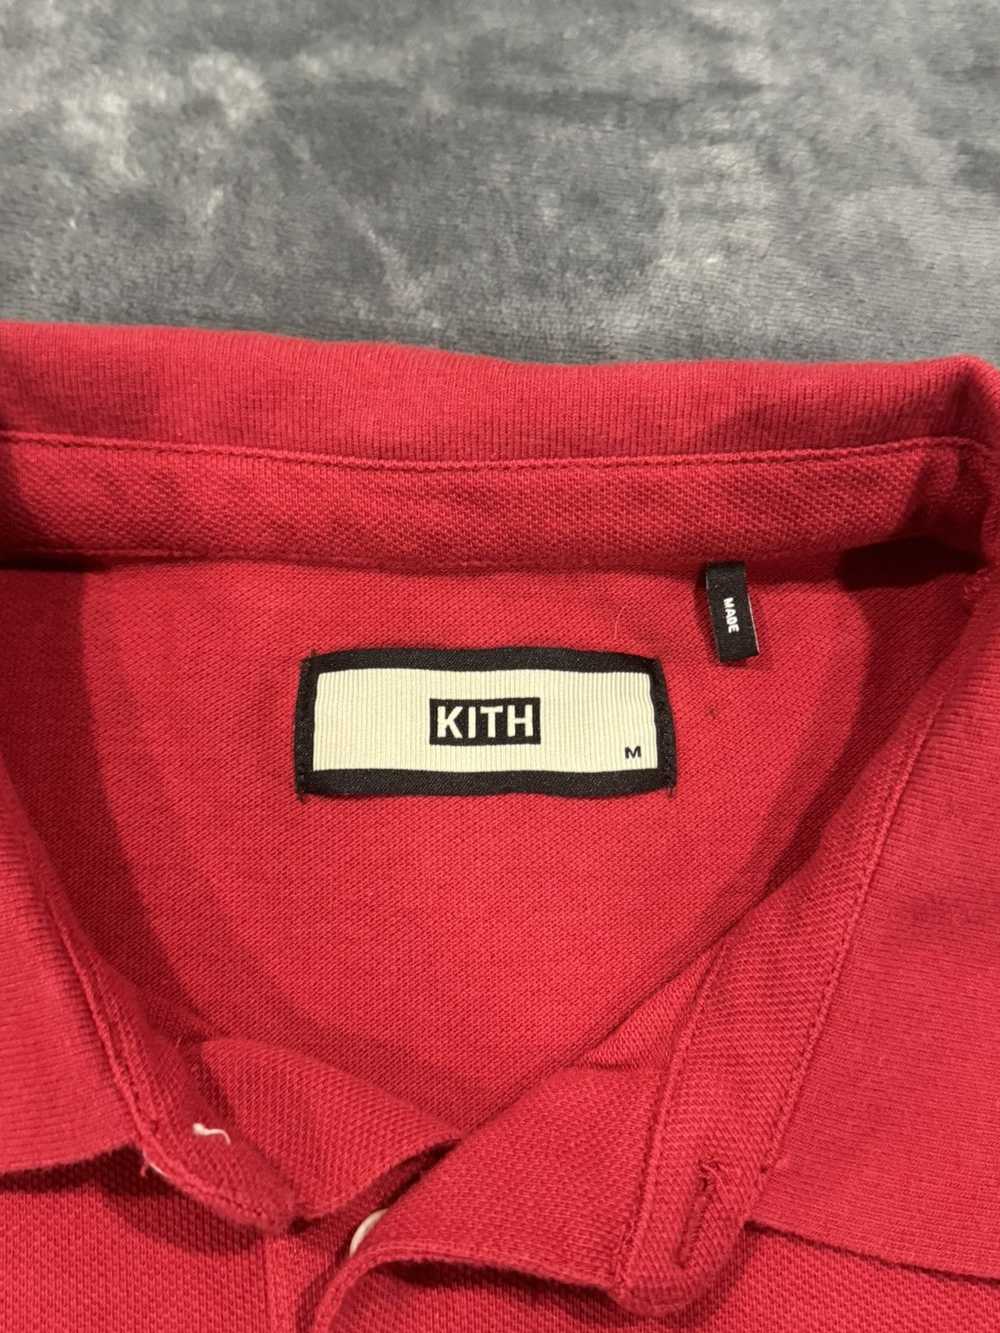 Kith Kith Pique SS Polo - Red - image 4